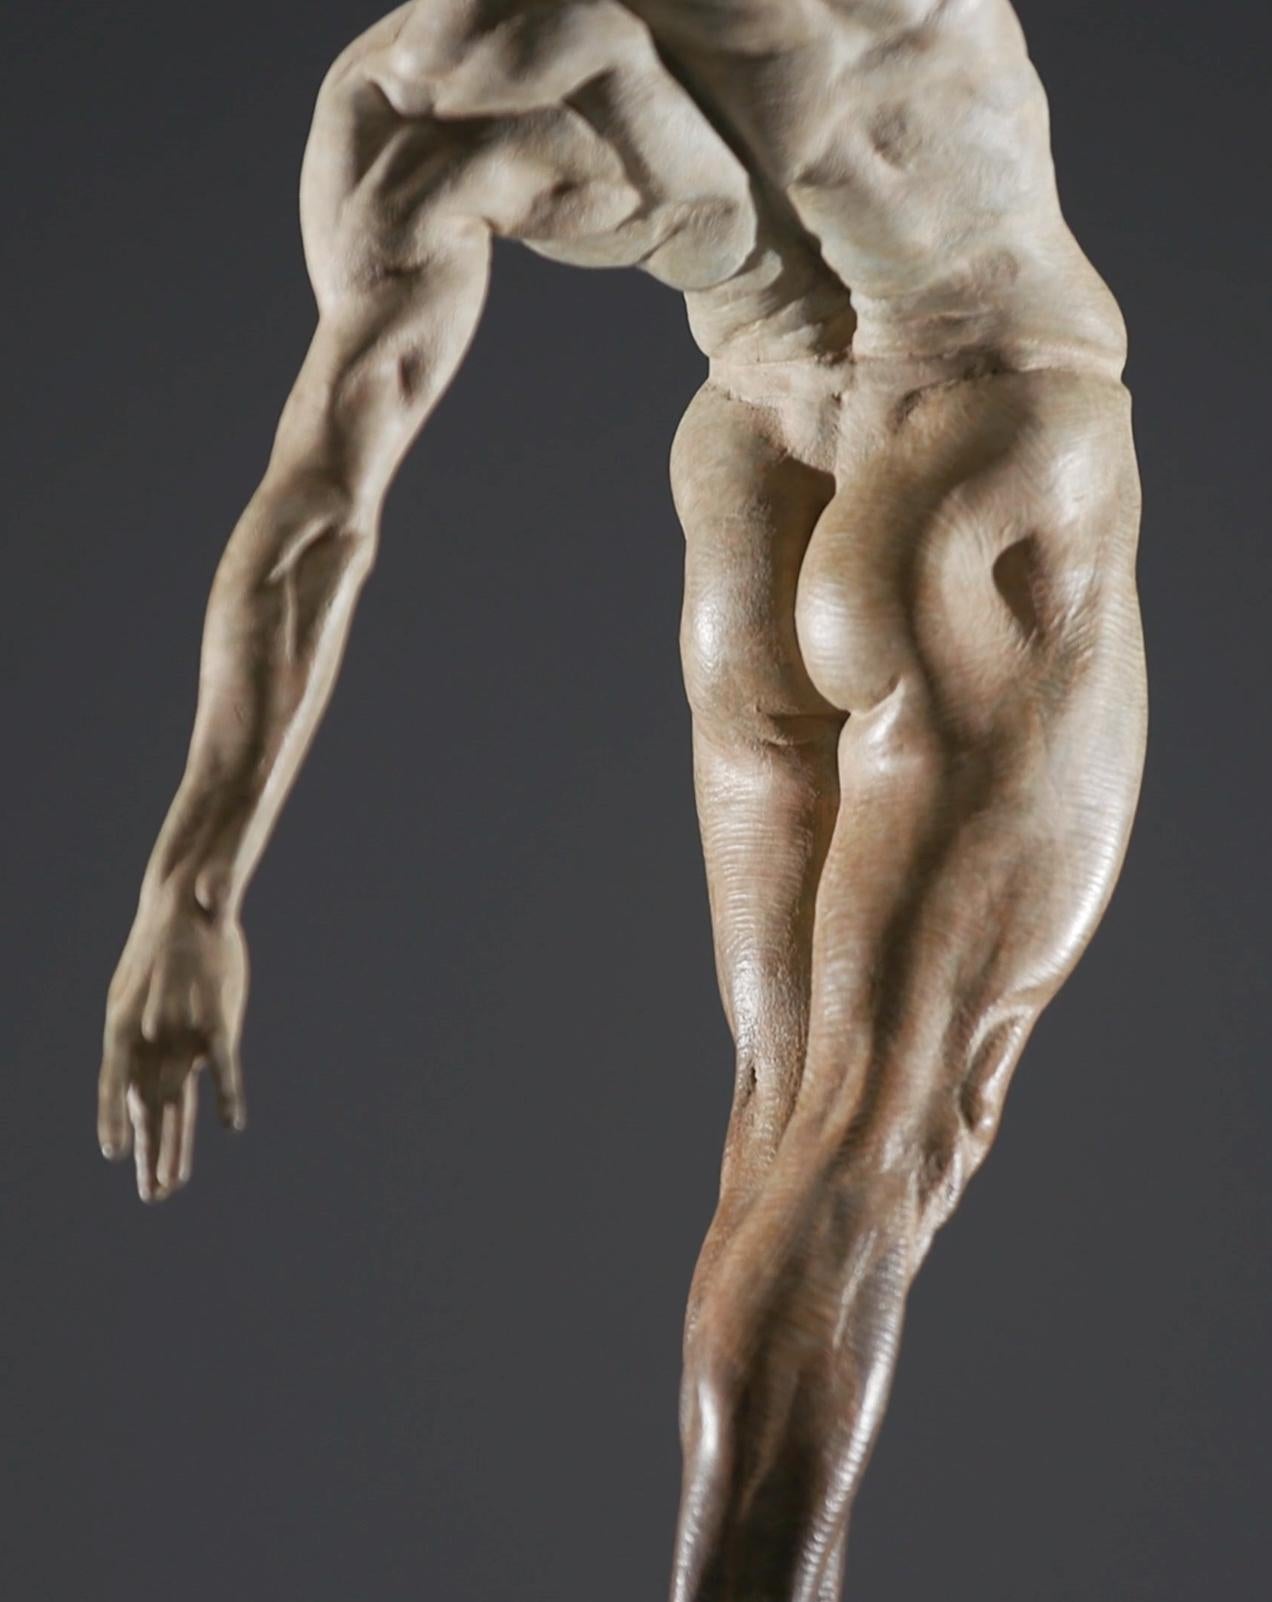 Dans son œuvre intitulée Allongé - to elongate or stretch - Richard MacDonald a sculpté les lignes puissantes du danseur masculin, accentuant la forme gracieuse de son corps. Travaillant avec les principaux danseurs du Royal Ballet, les observations